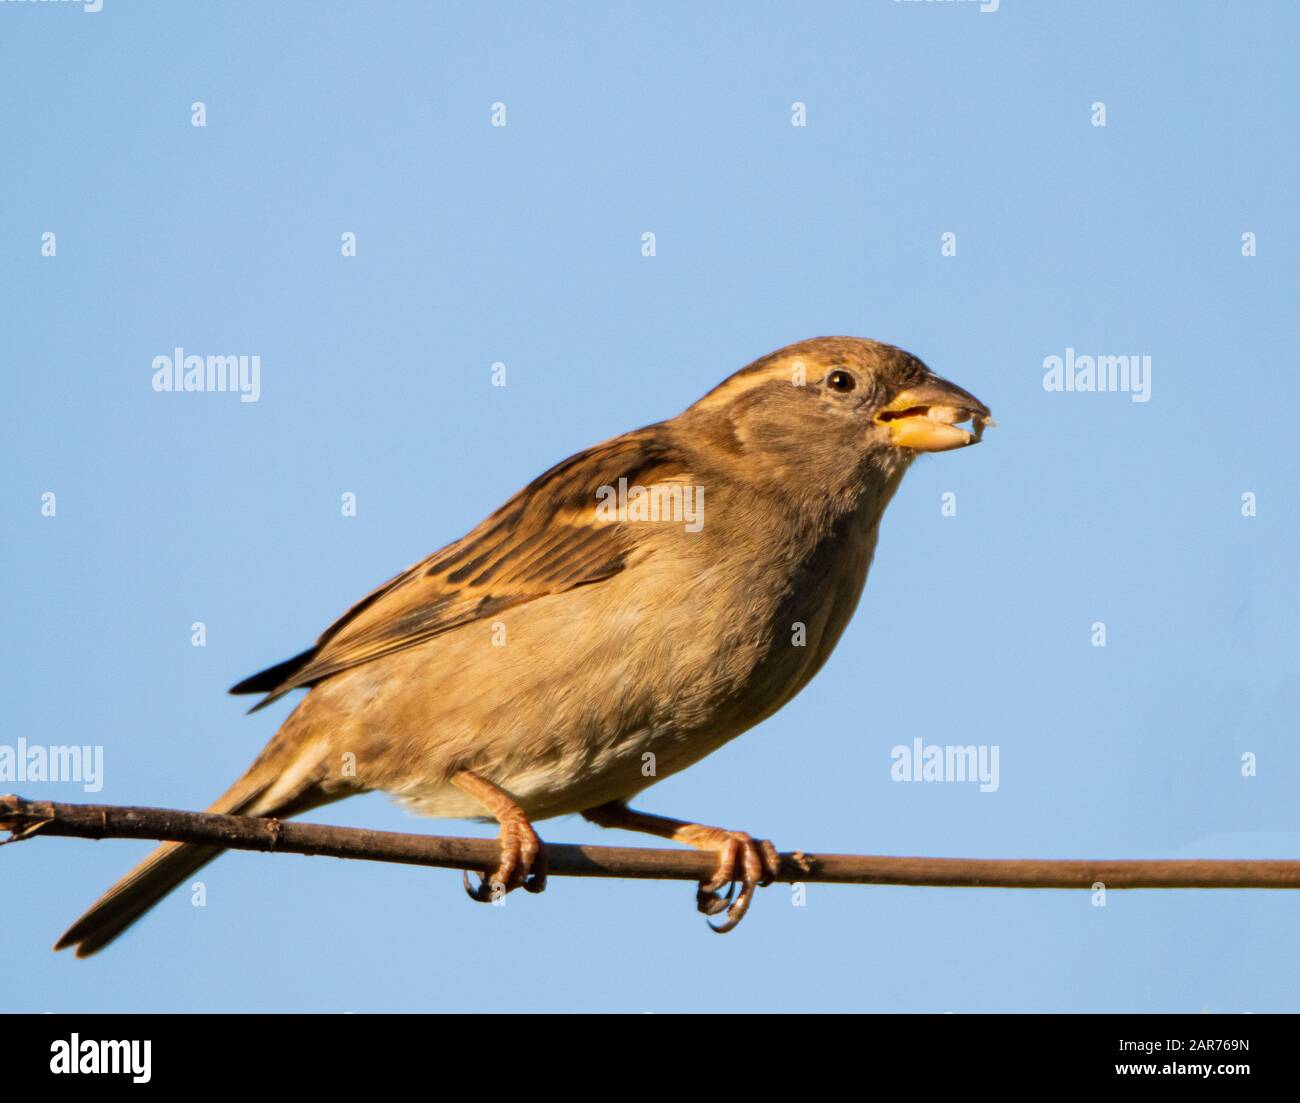 Maison Sparrow, Passer deomsticus, oiseau sauvage, perché sur une branche dans un jardin du Royaume-Uni, hiver 2019-20 Banque D'Images